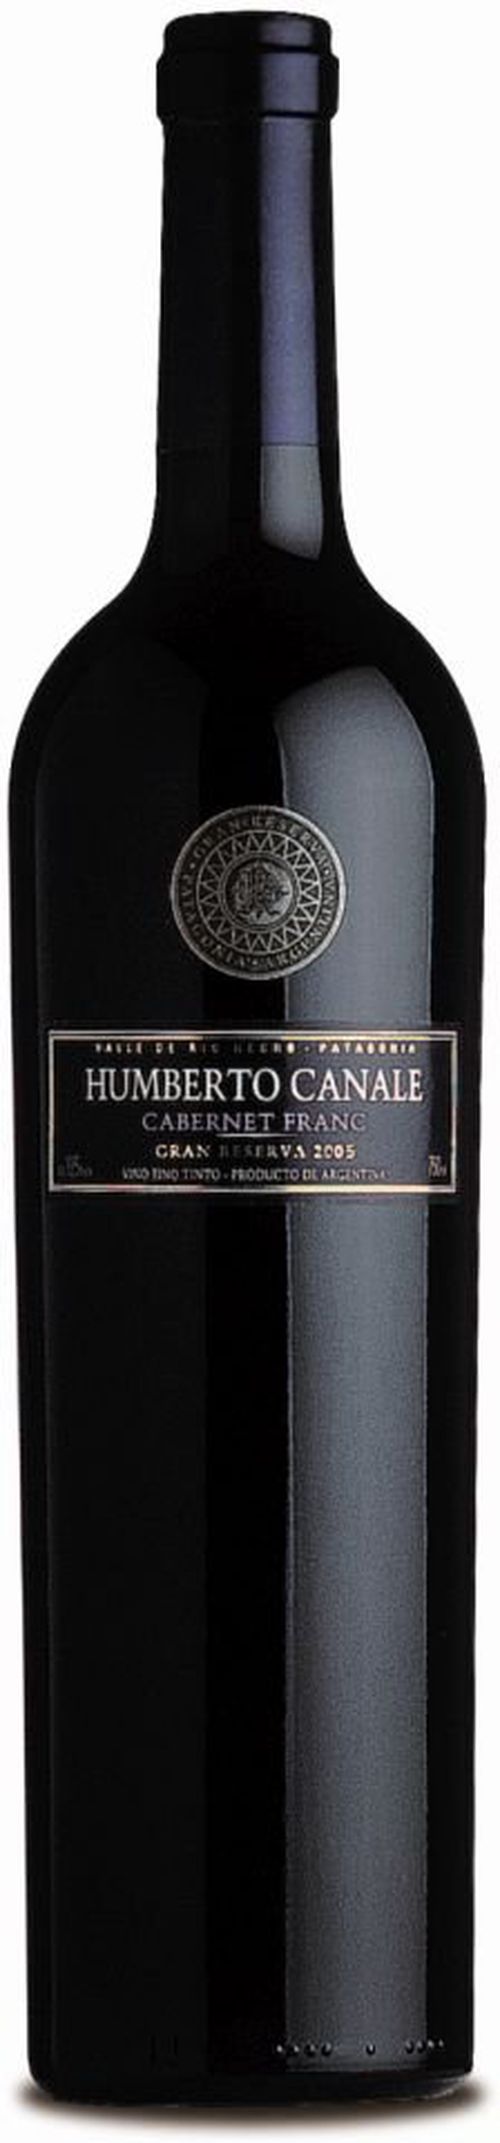 Humberto Canale Cabernet Franc Gran Reserva 2014 0,75l 14%